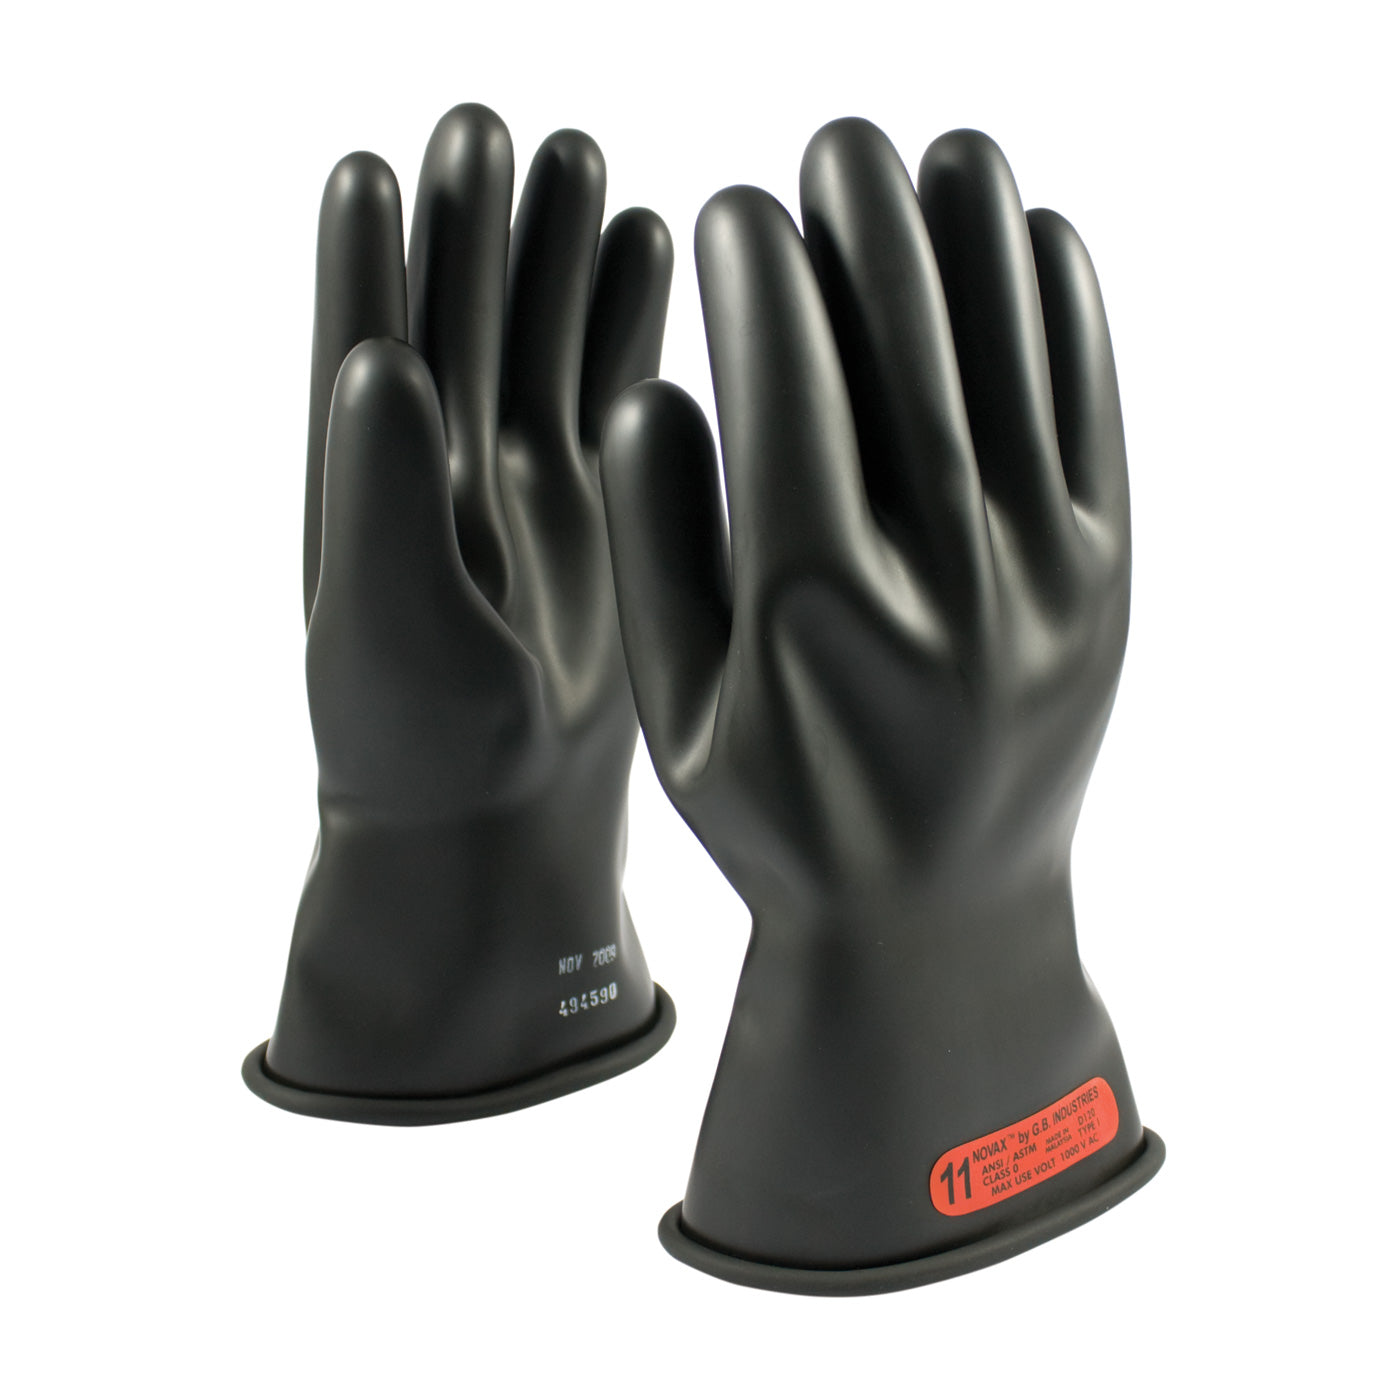 PIP Novax 150-0-11 Class 0 Rubber Insulating Glove, 1 Pair